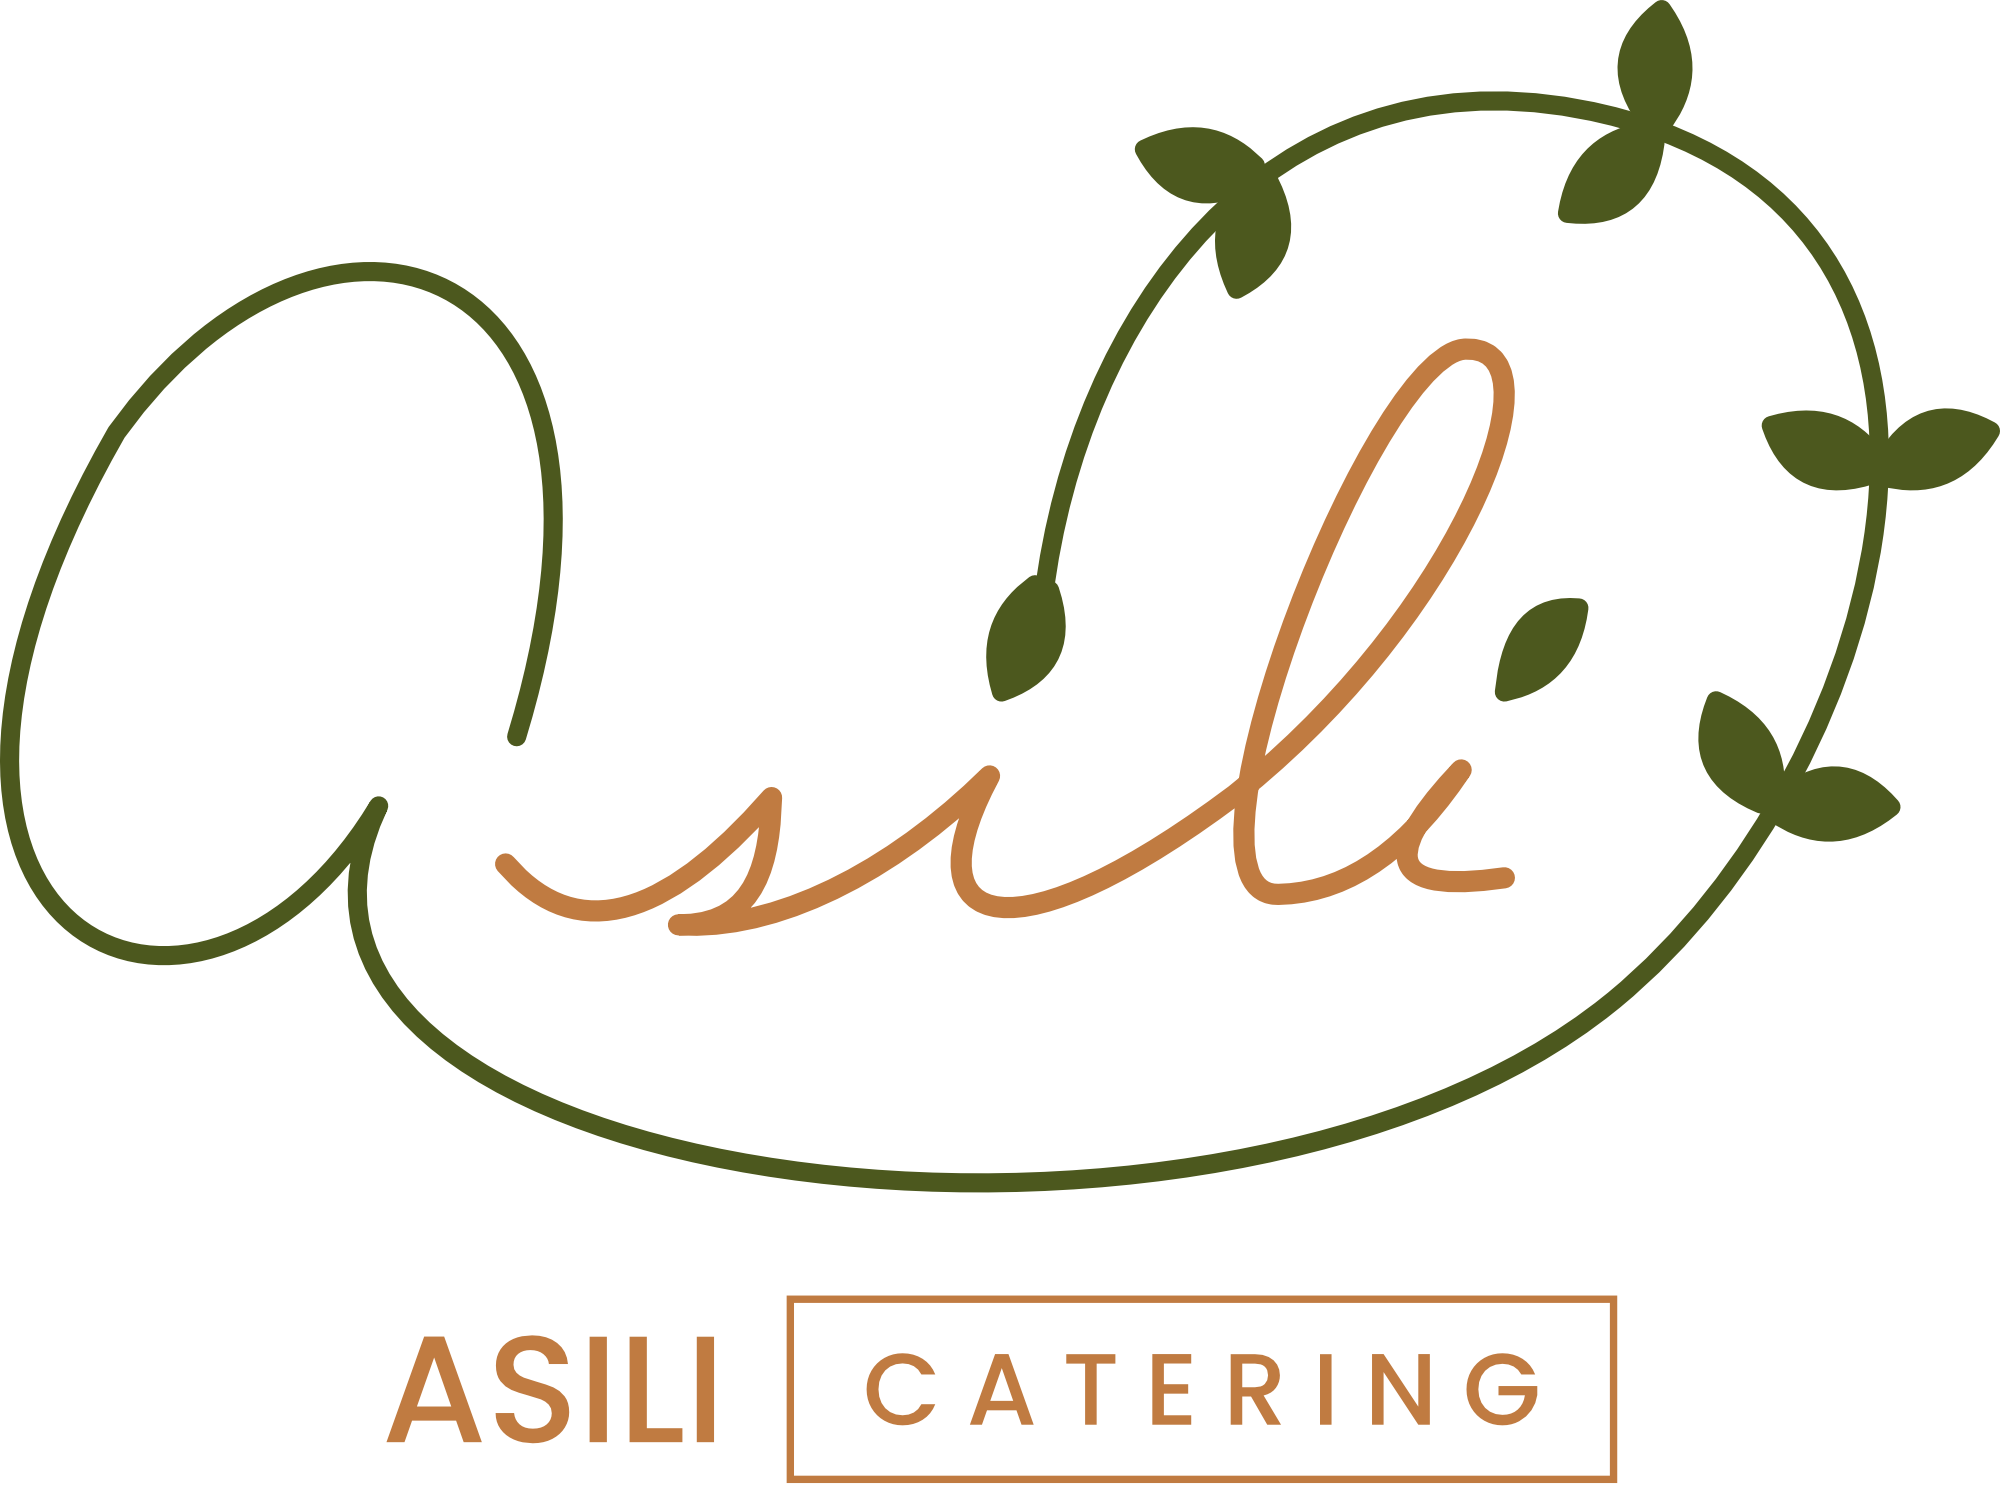 Asili Catering